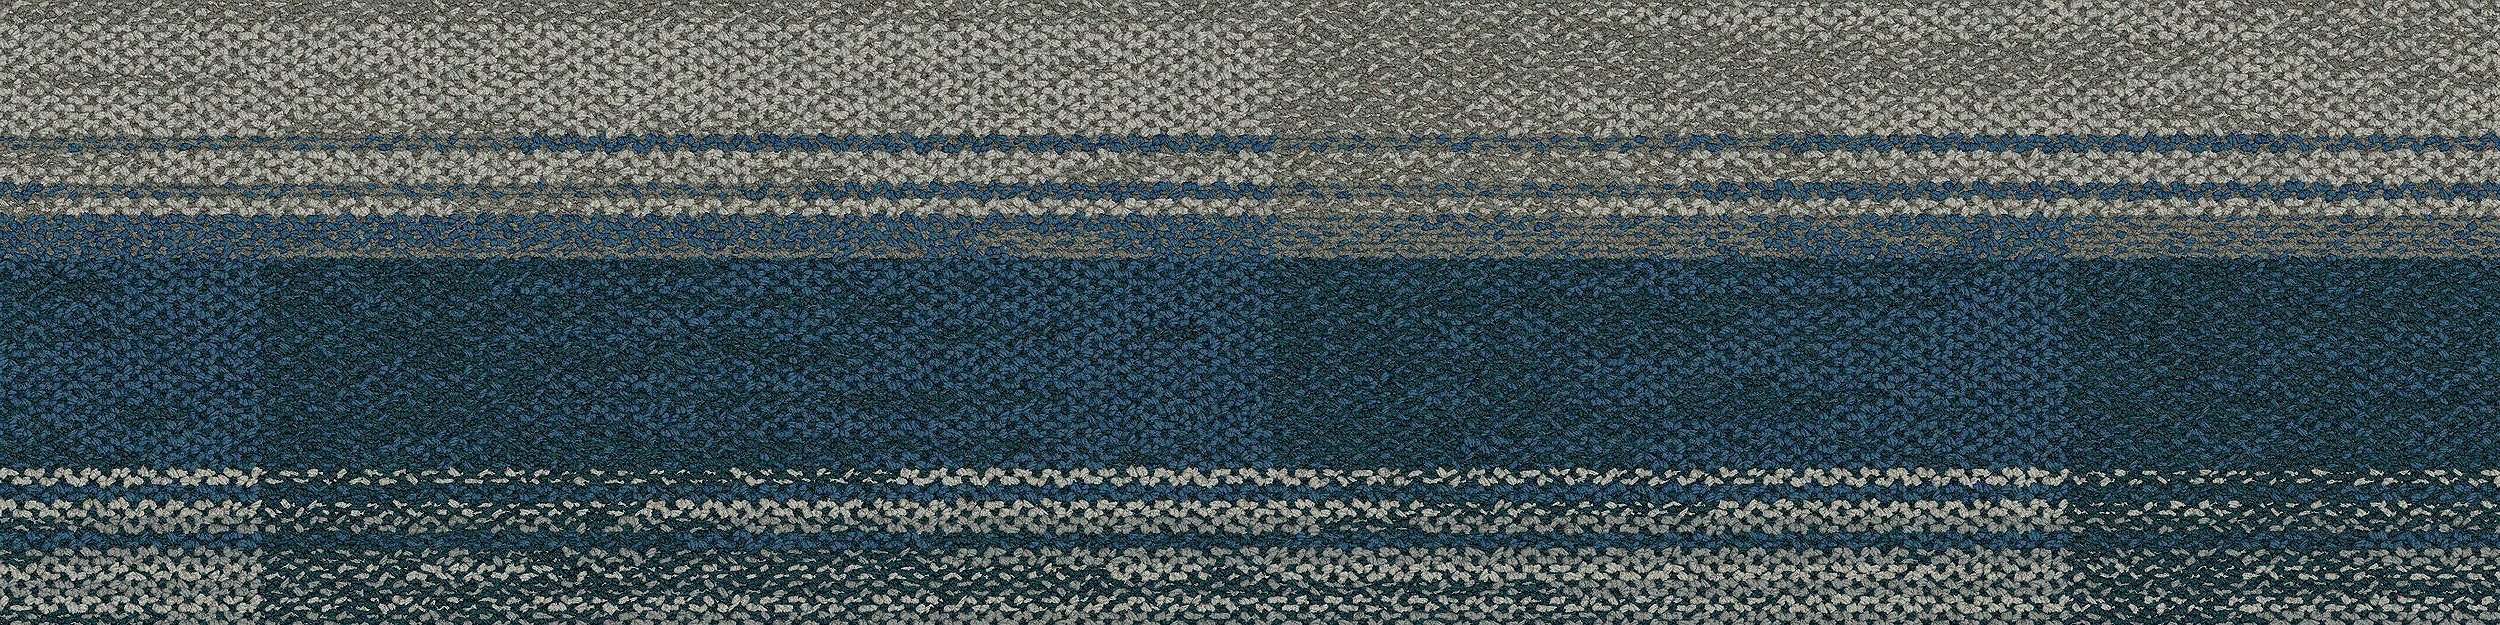 AE315 Carpet Tile In Mist/Aquamarine image number 9